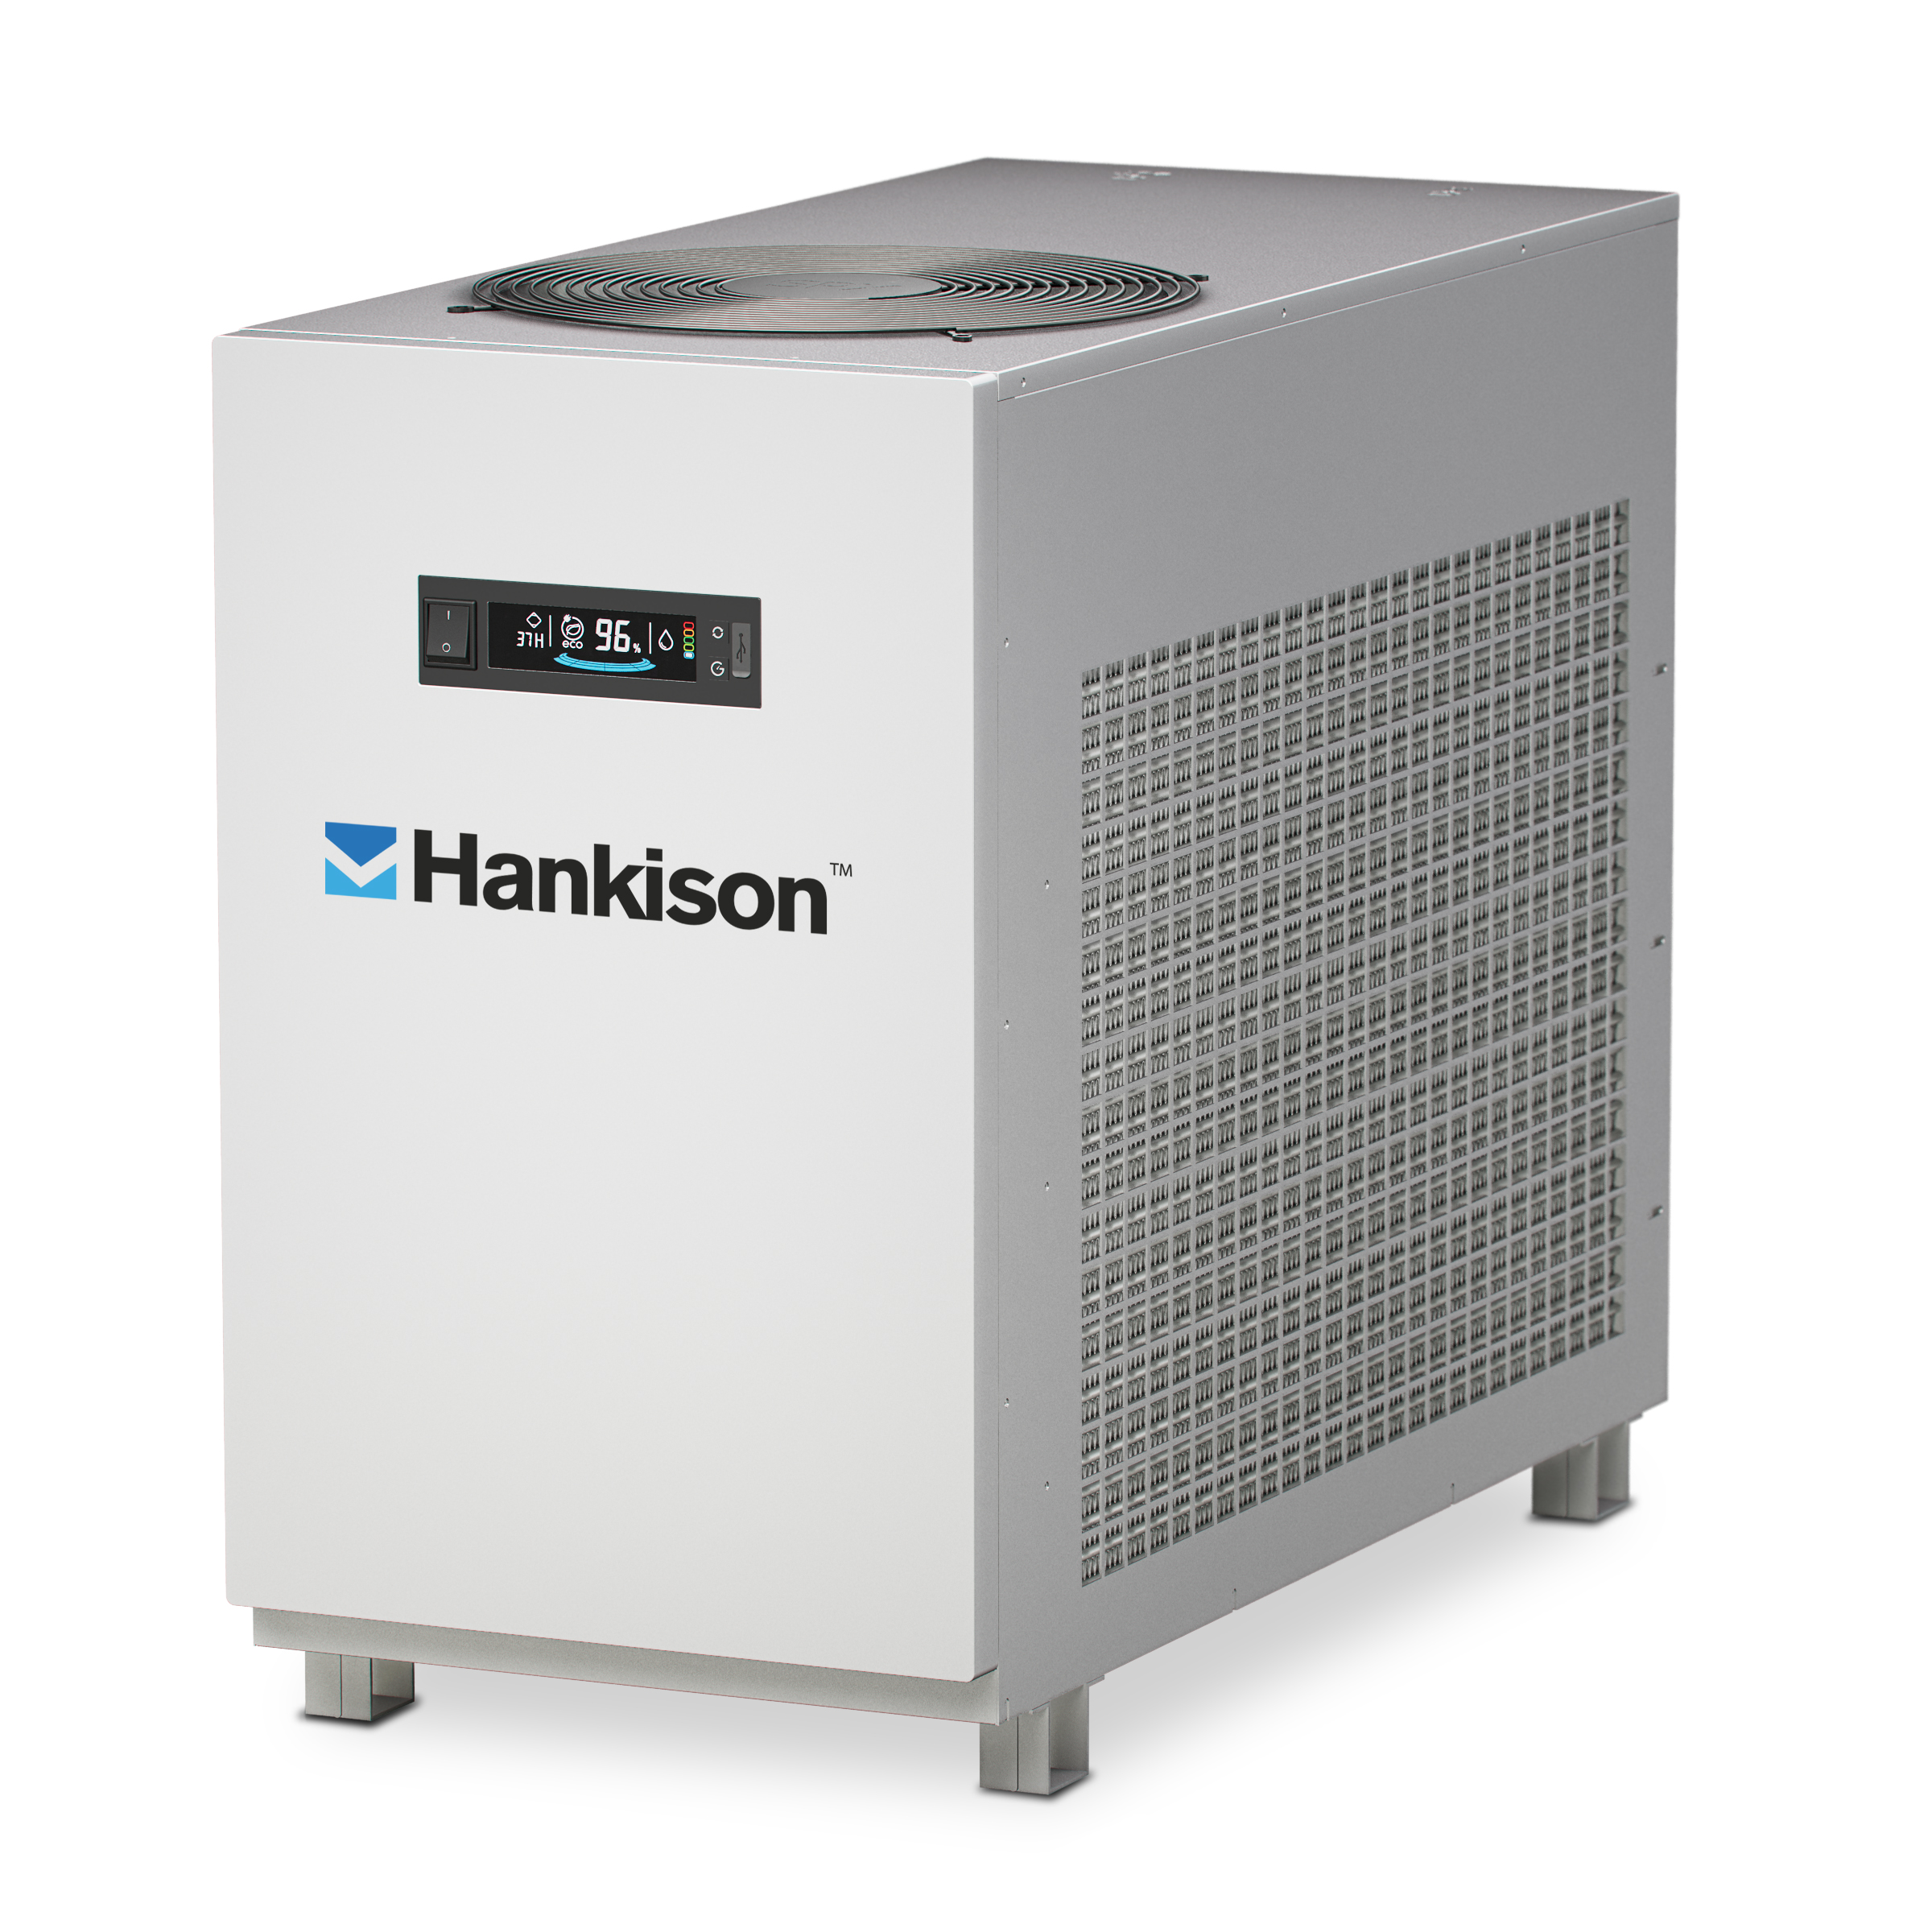 Hankison FLEX refrigerated compressed air dryer 2